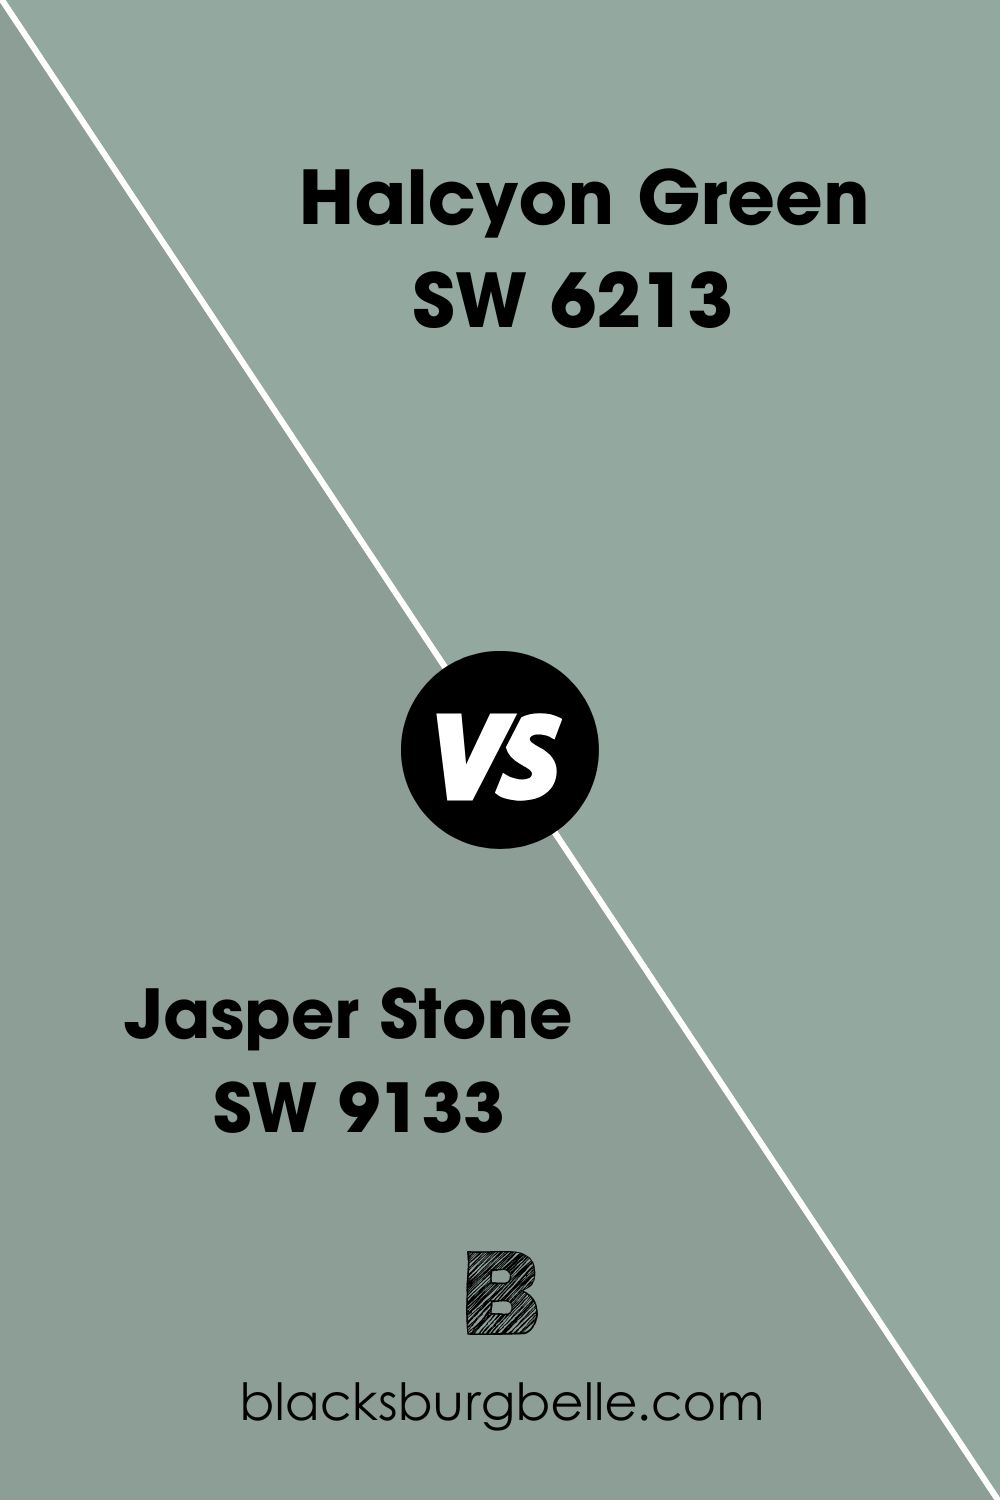 Jasper Stone SW 9133